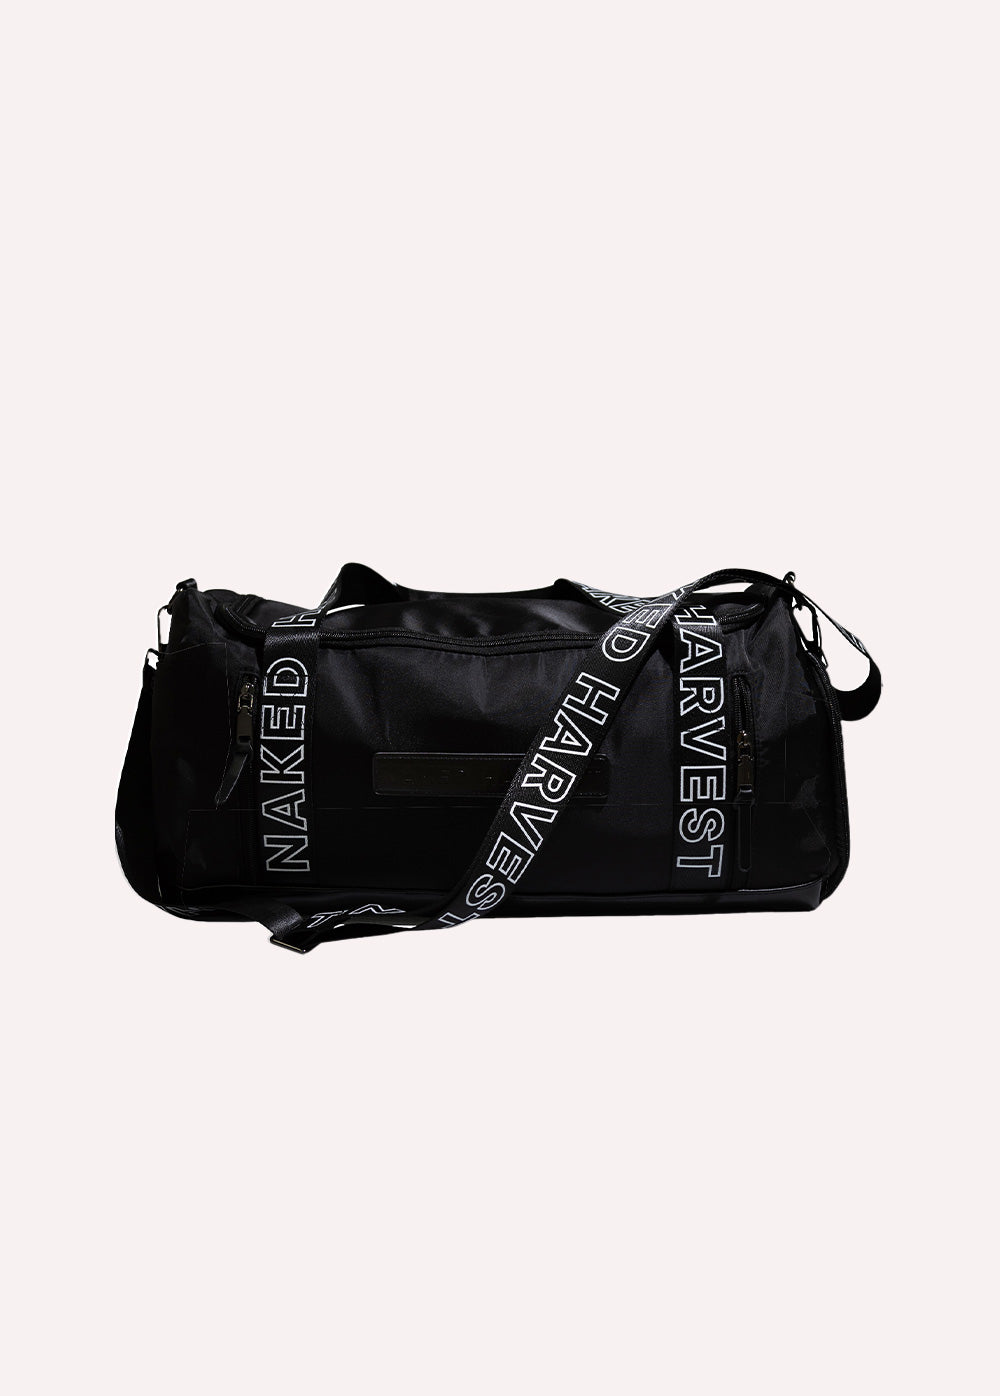 Daily Essentials Gym Bag - Black